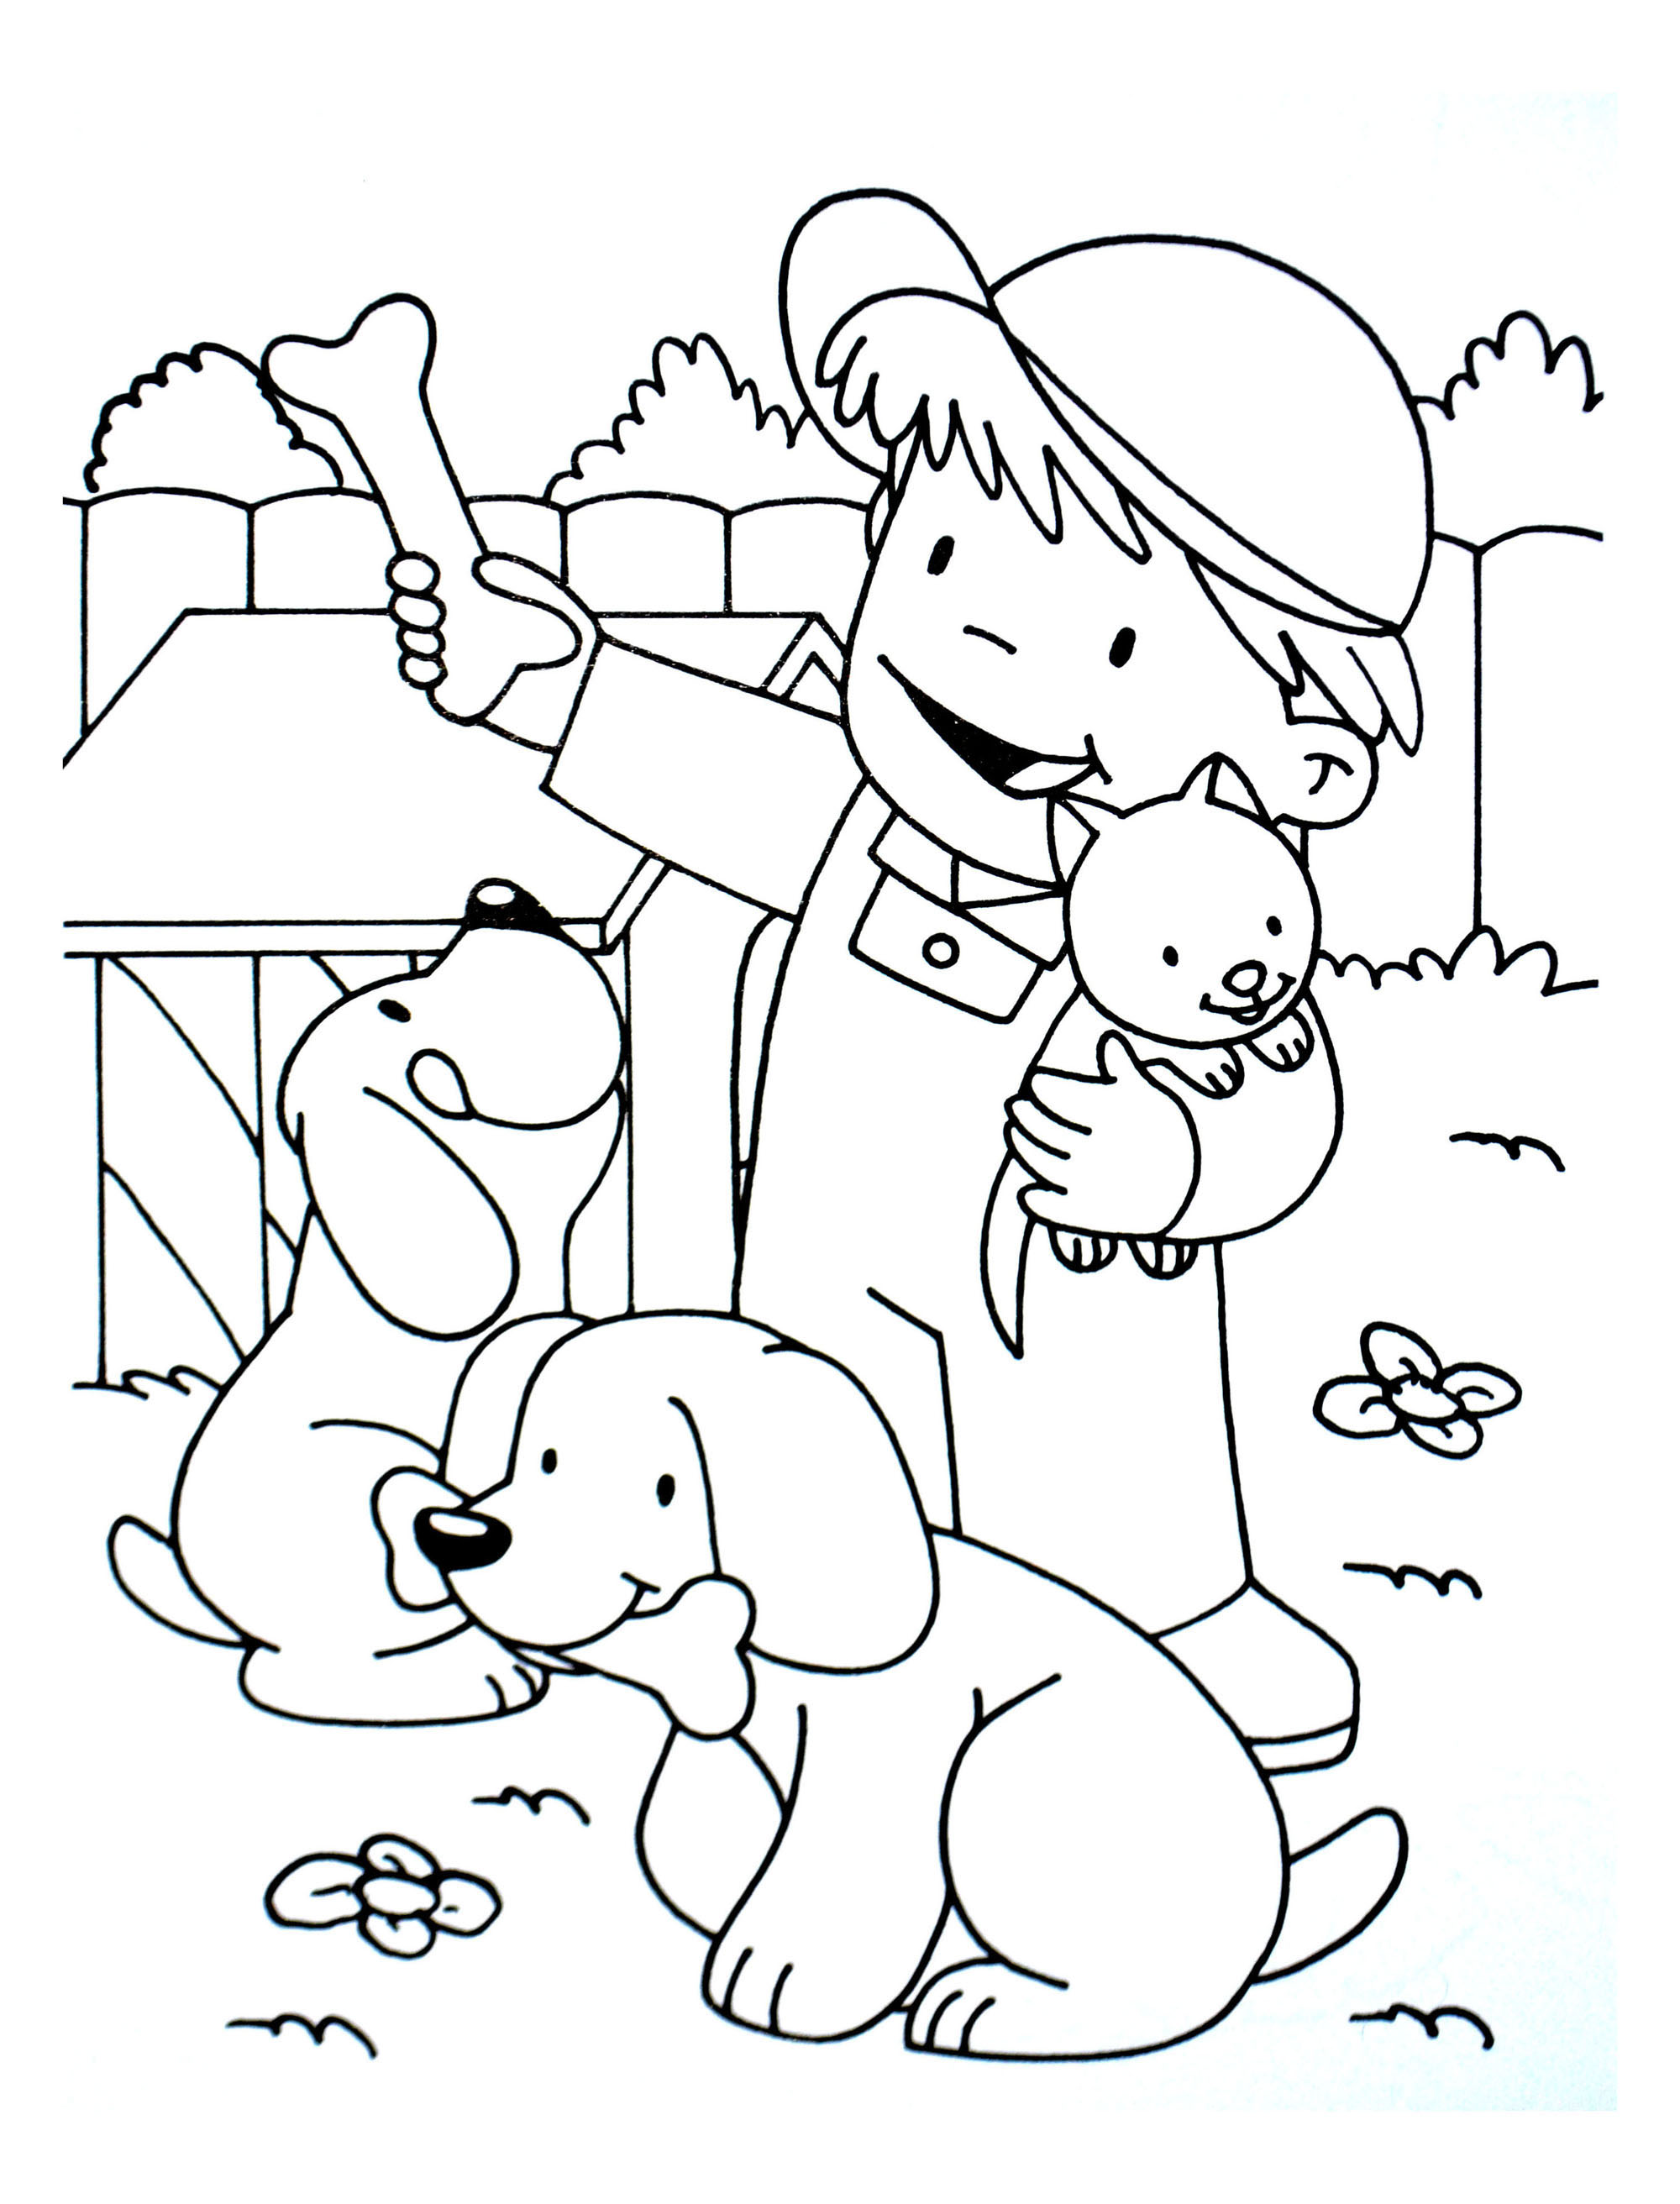 Coloriage imprimer de chien dessin de chien imprimer coloriage duun chien de traineau dessin Coloriage enfant a imprimer